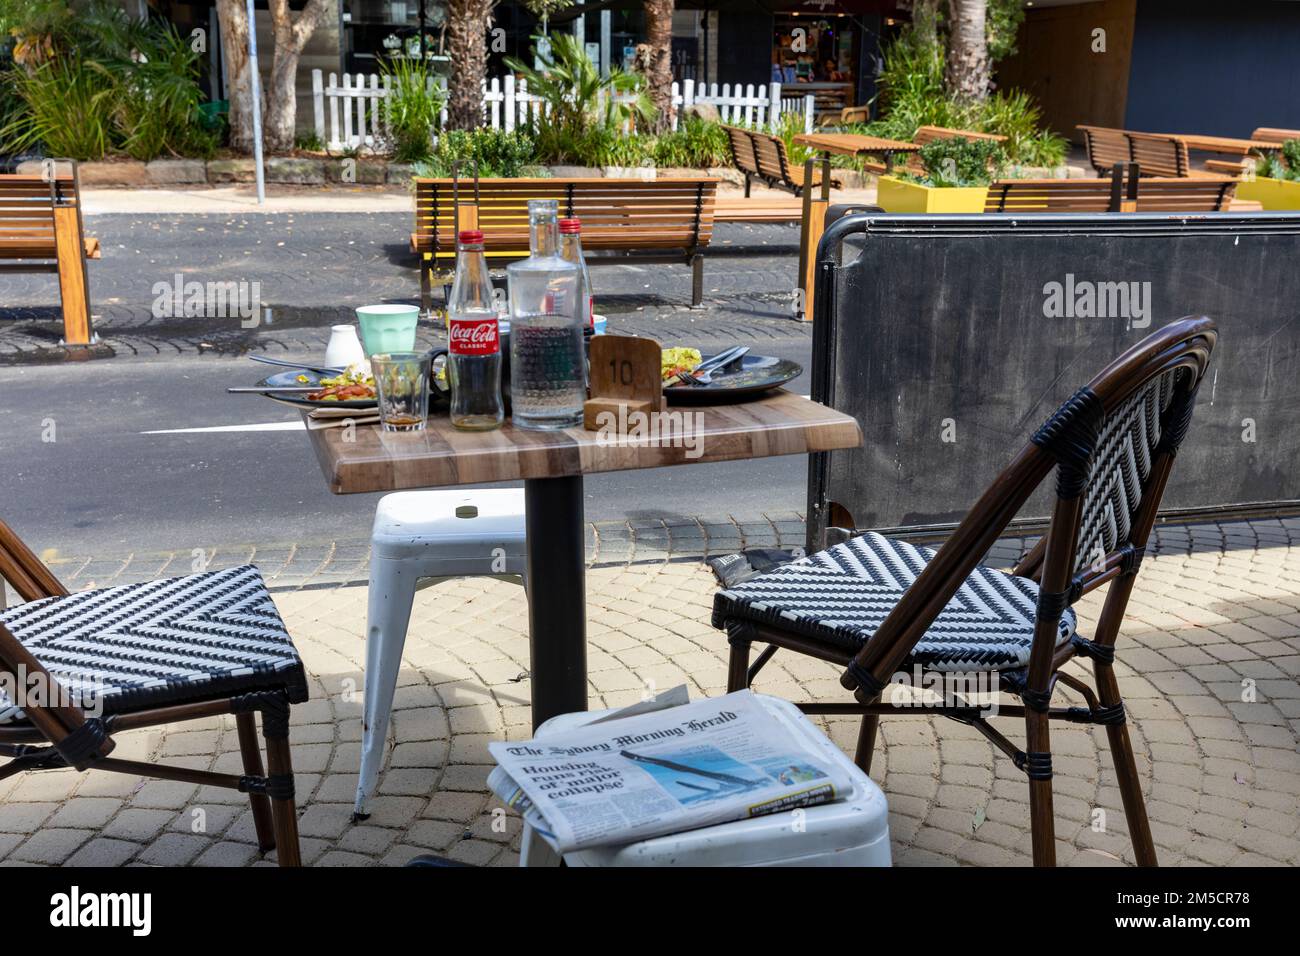 Table de petit-déjeuner dans un café à Avalon Beach Sydney avec les restes de nourriture, bouteille de coca vide et tasses de café, NSW, Australie Banque D'Images